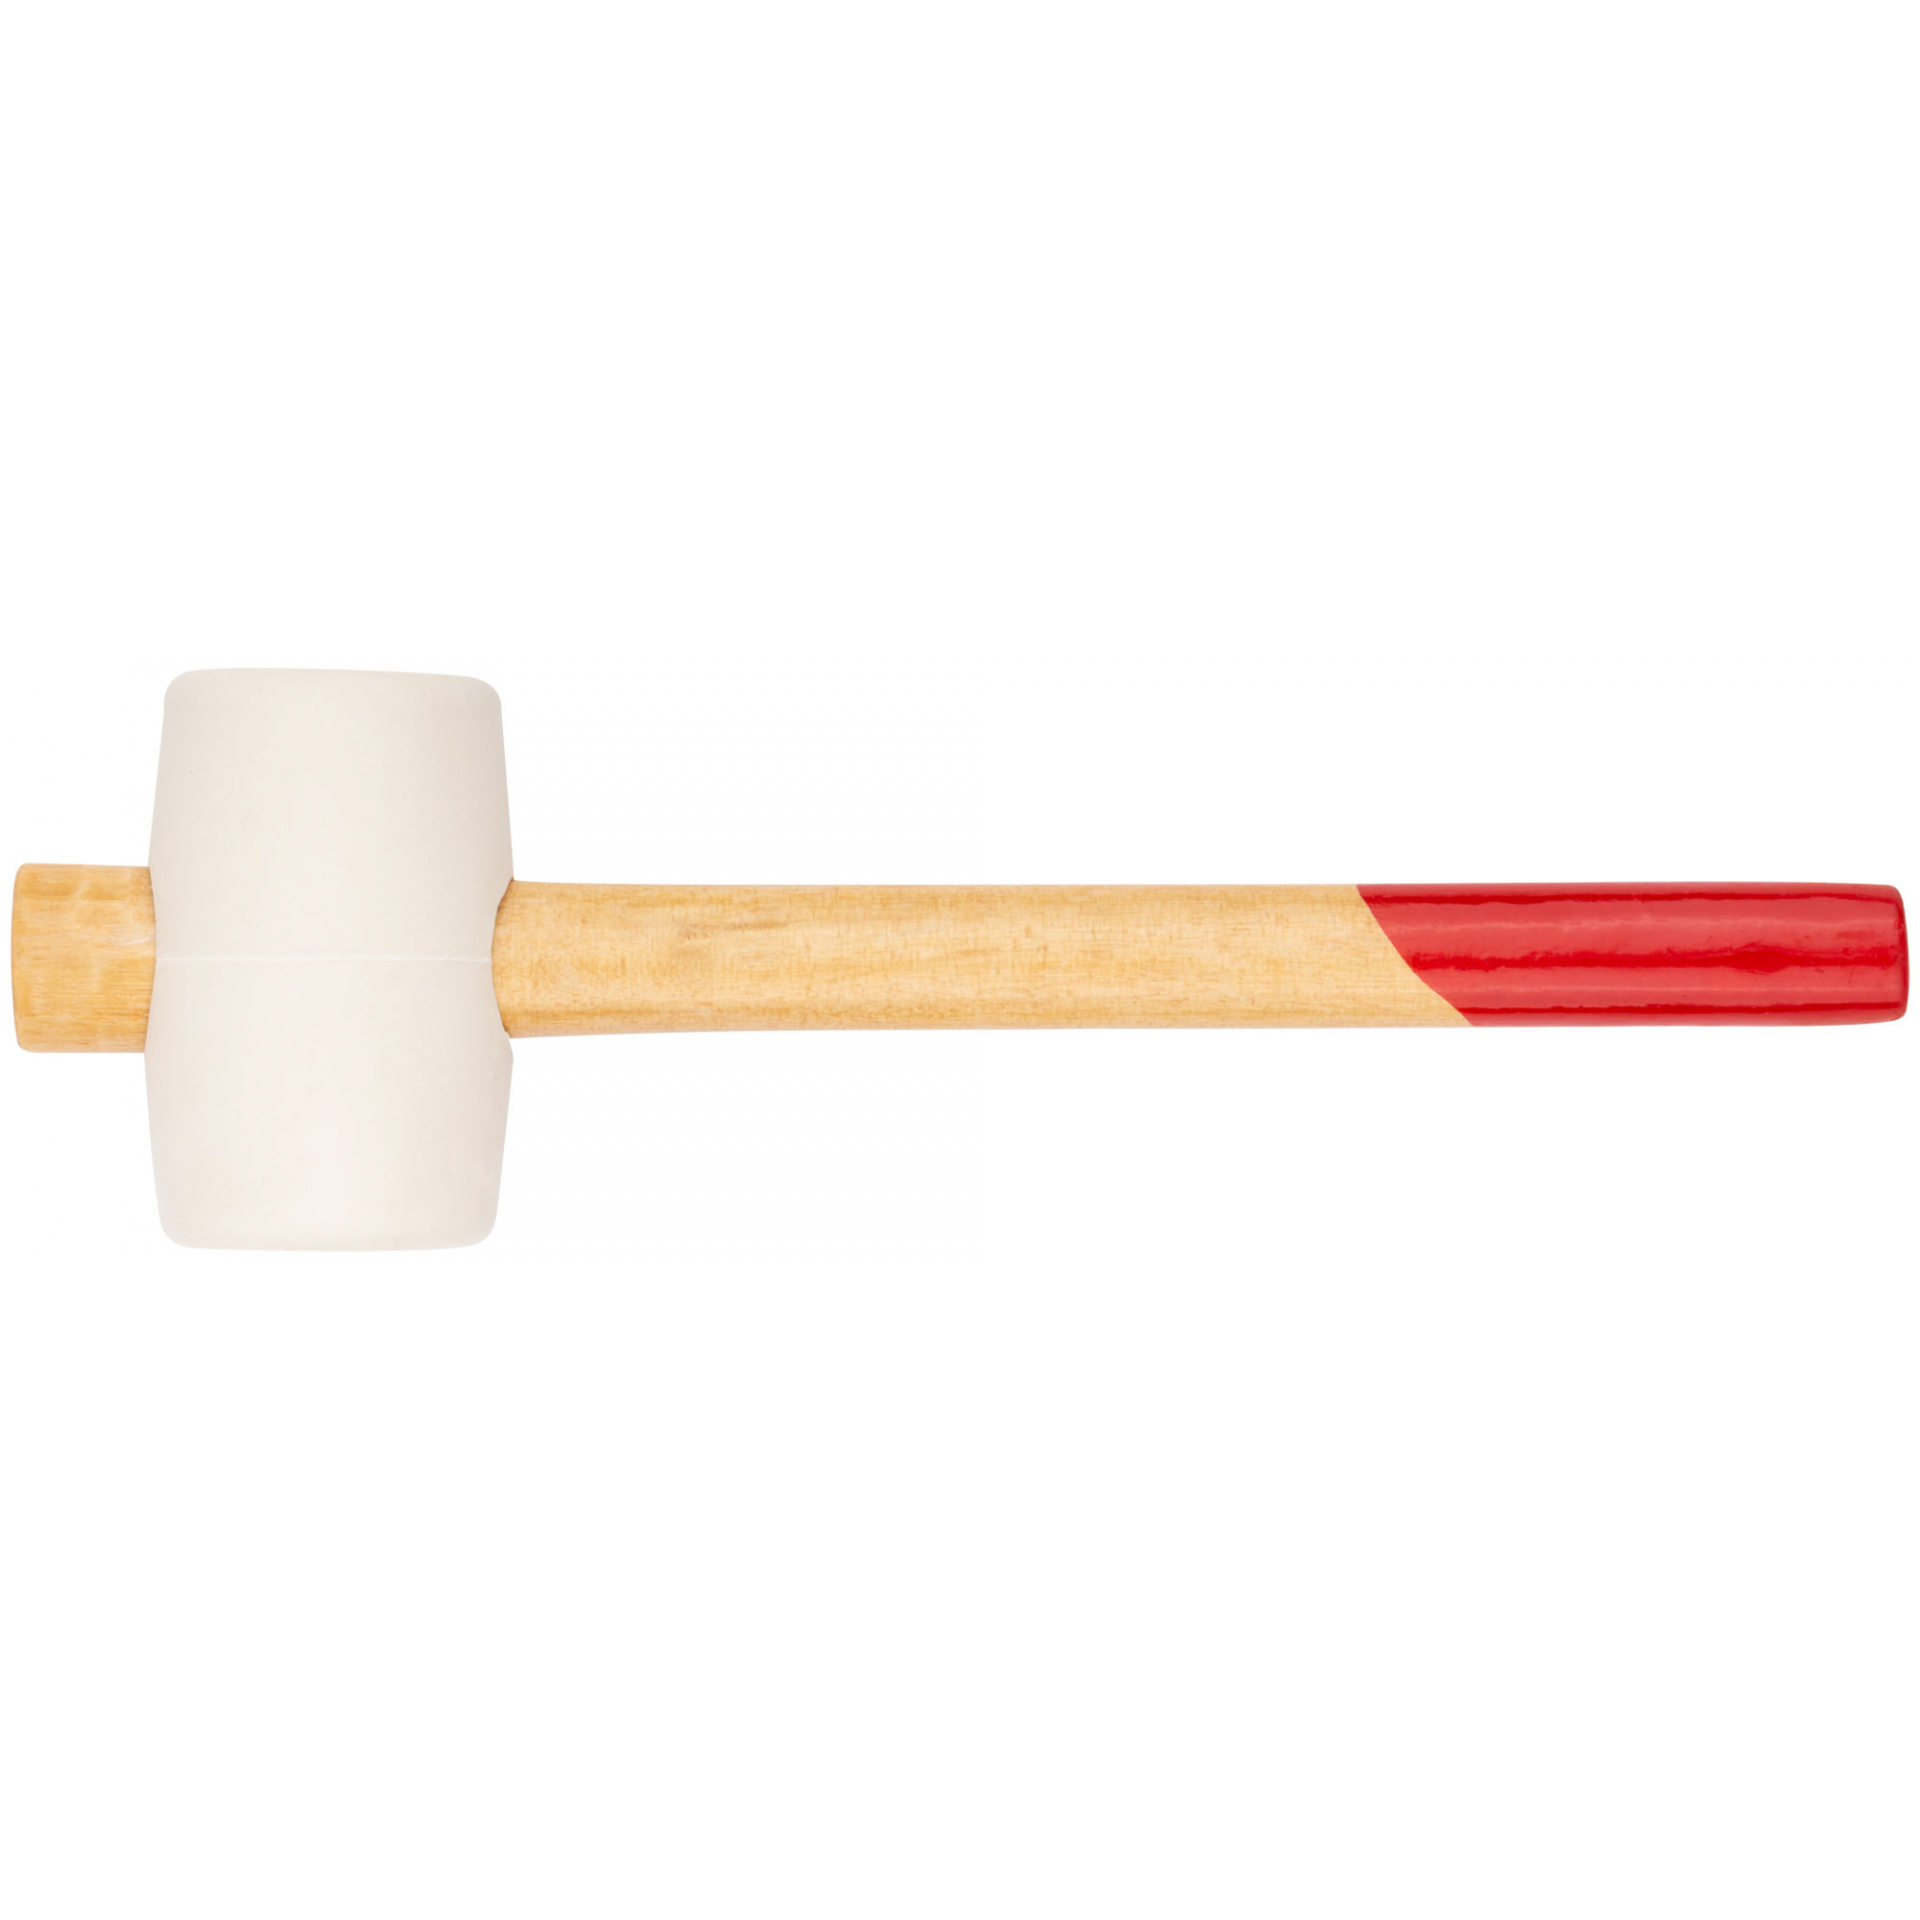 Киянка резиновая белая, деревянная ручка 45 мм ( 225 гр )